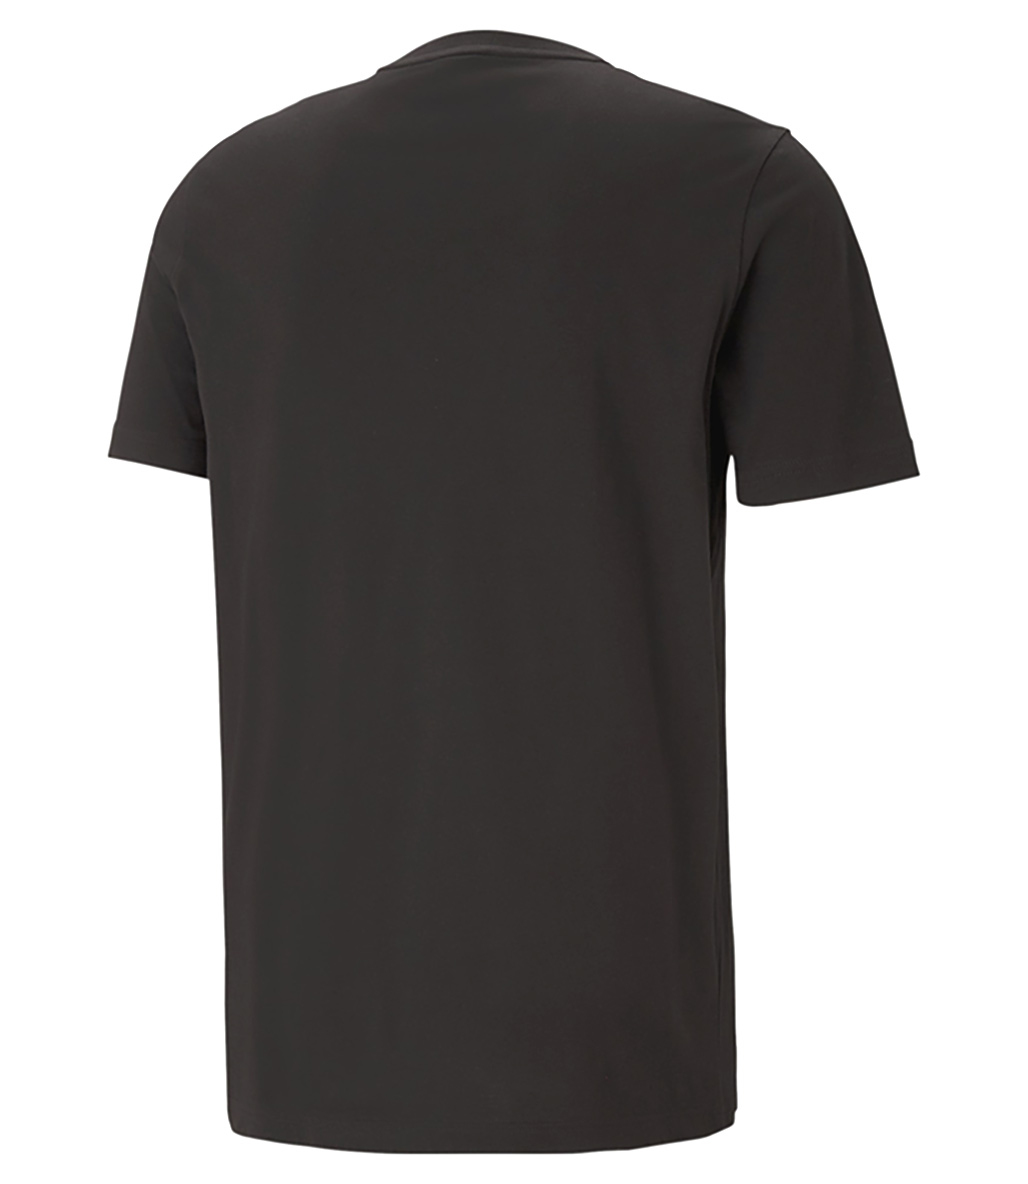 Puma Classics Logo Kısa Kollu T-Shirt Siyah